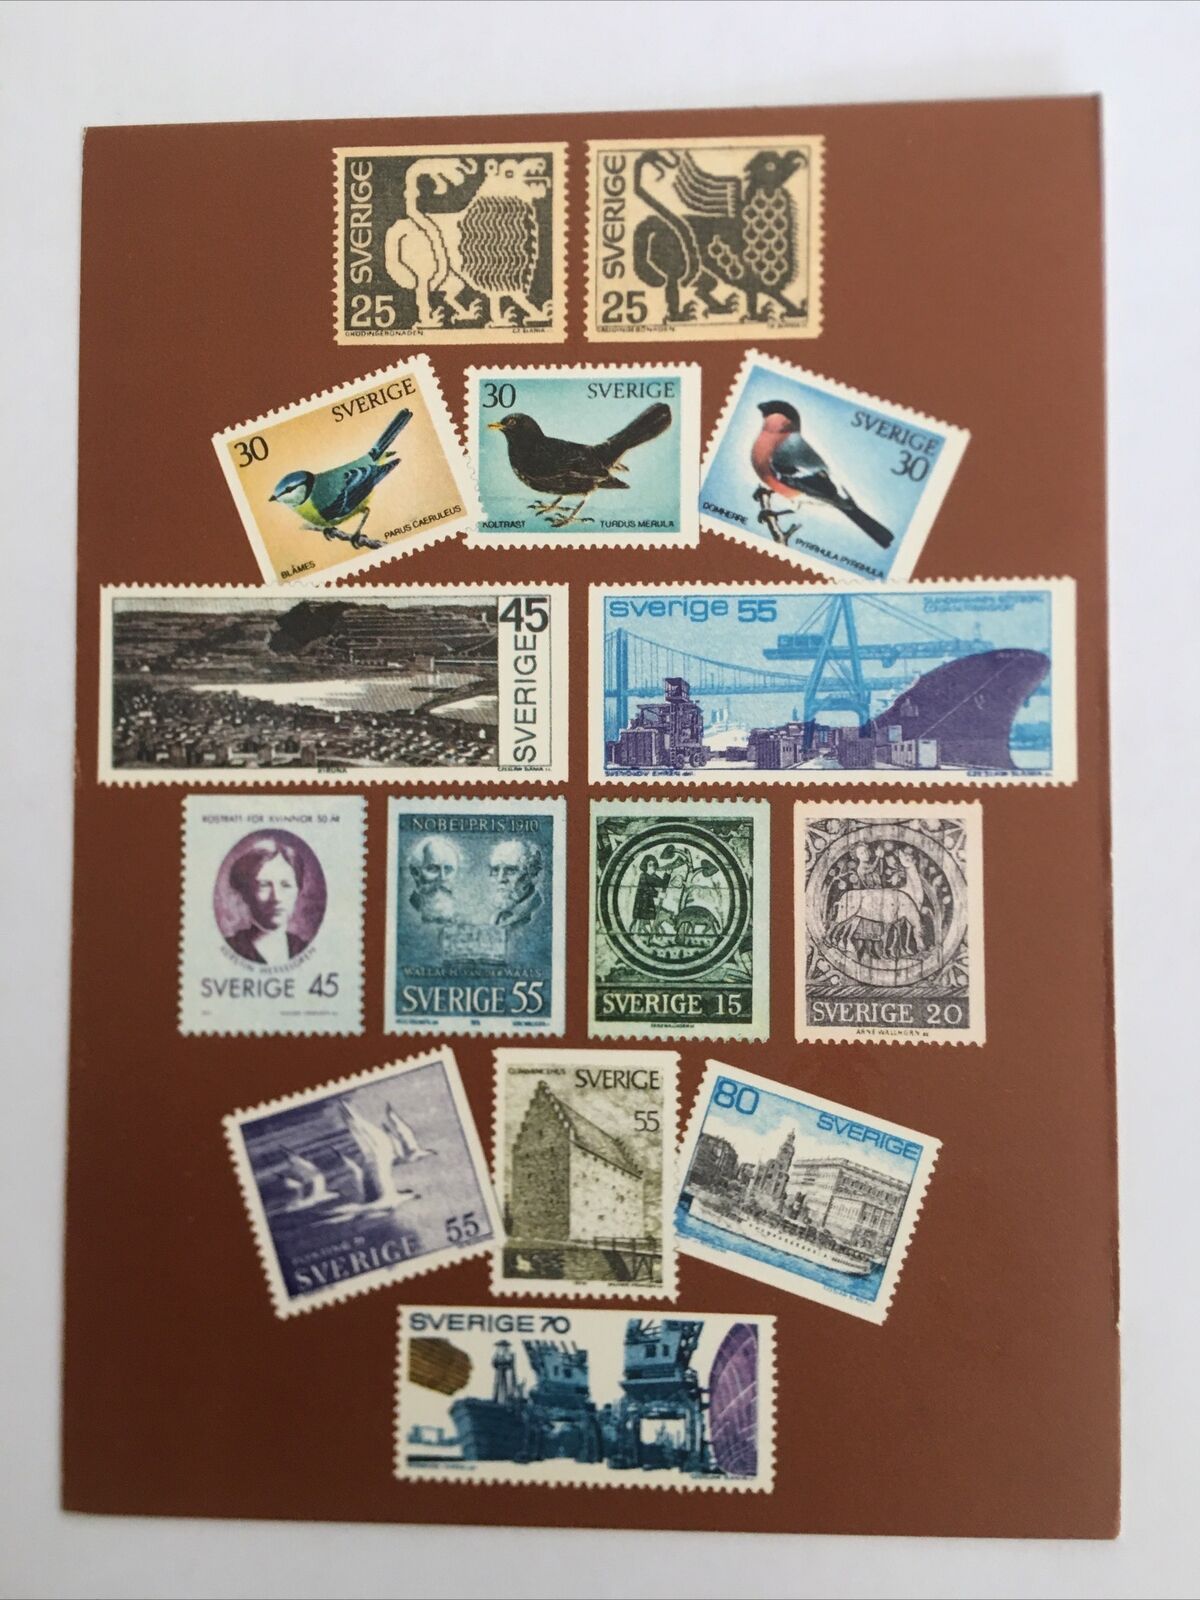 Sverige Sweden Postage Stamps 1970-1971 Vintage Postcard